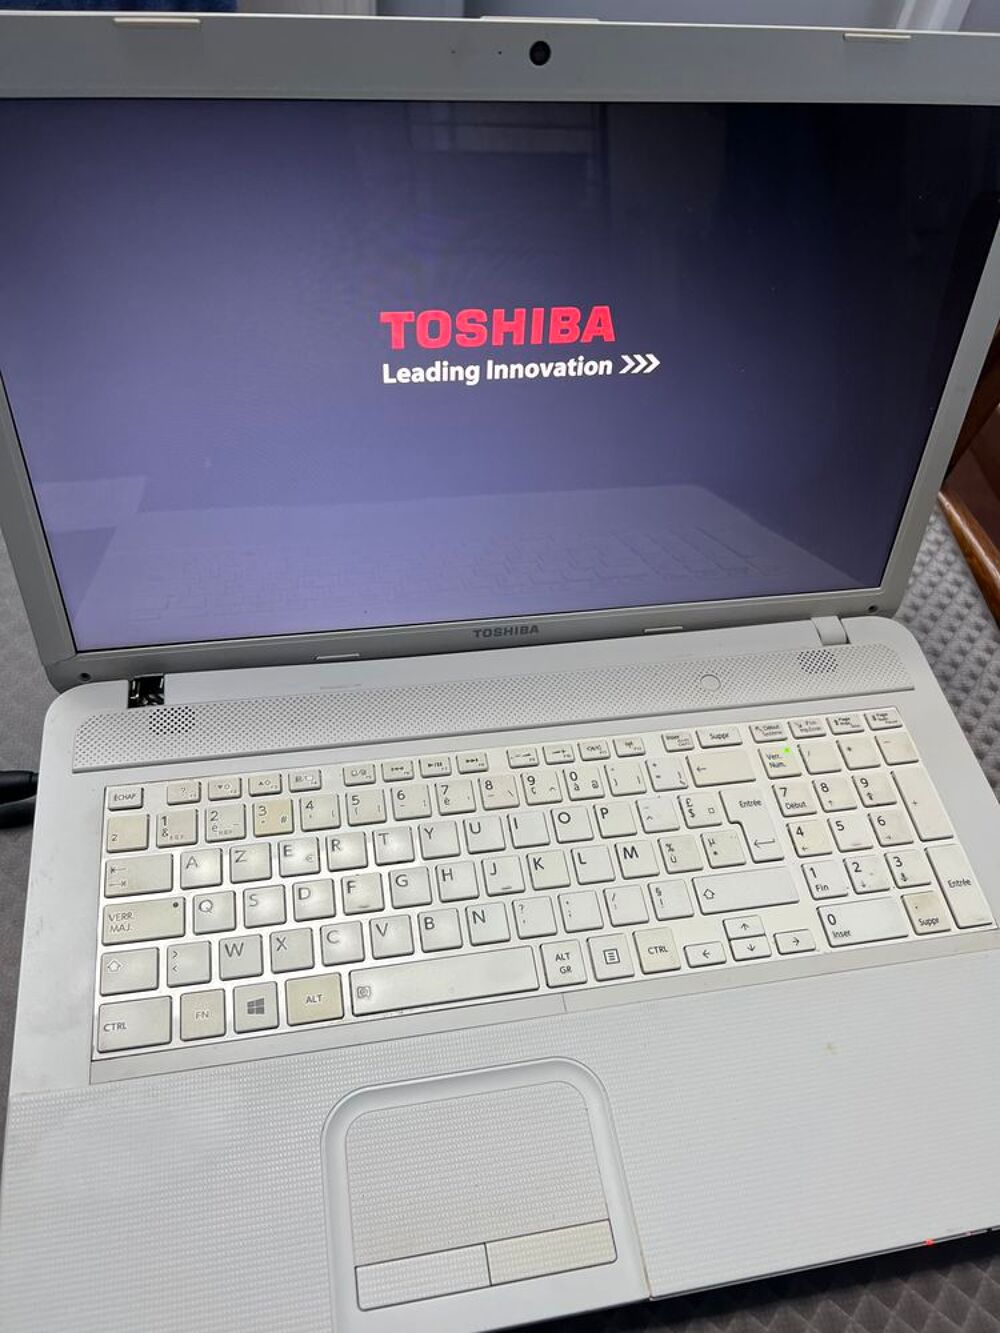 PC TOSHIBA POUR PIECES
Matriel informatique